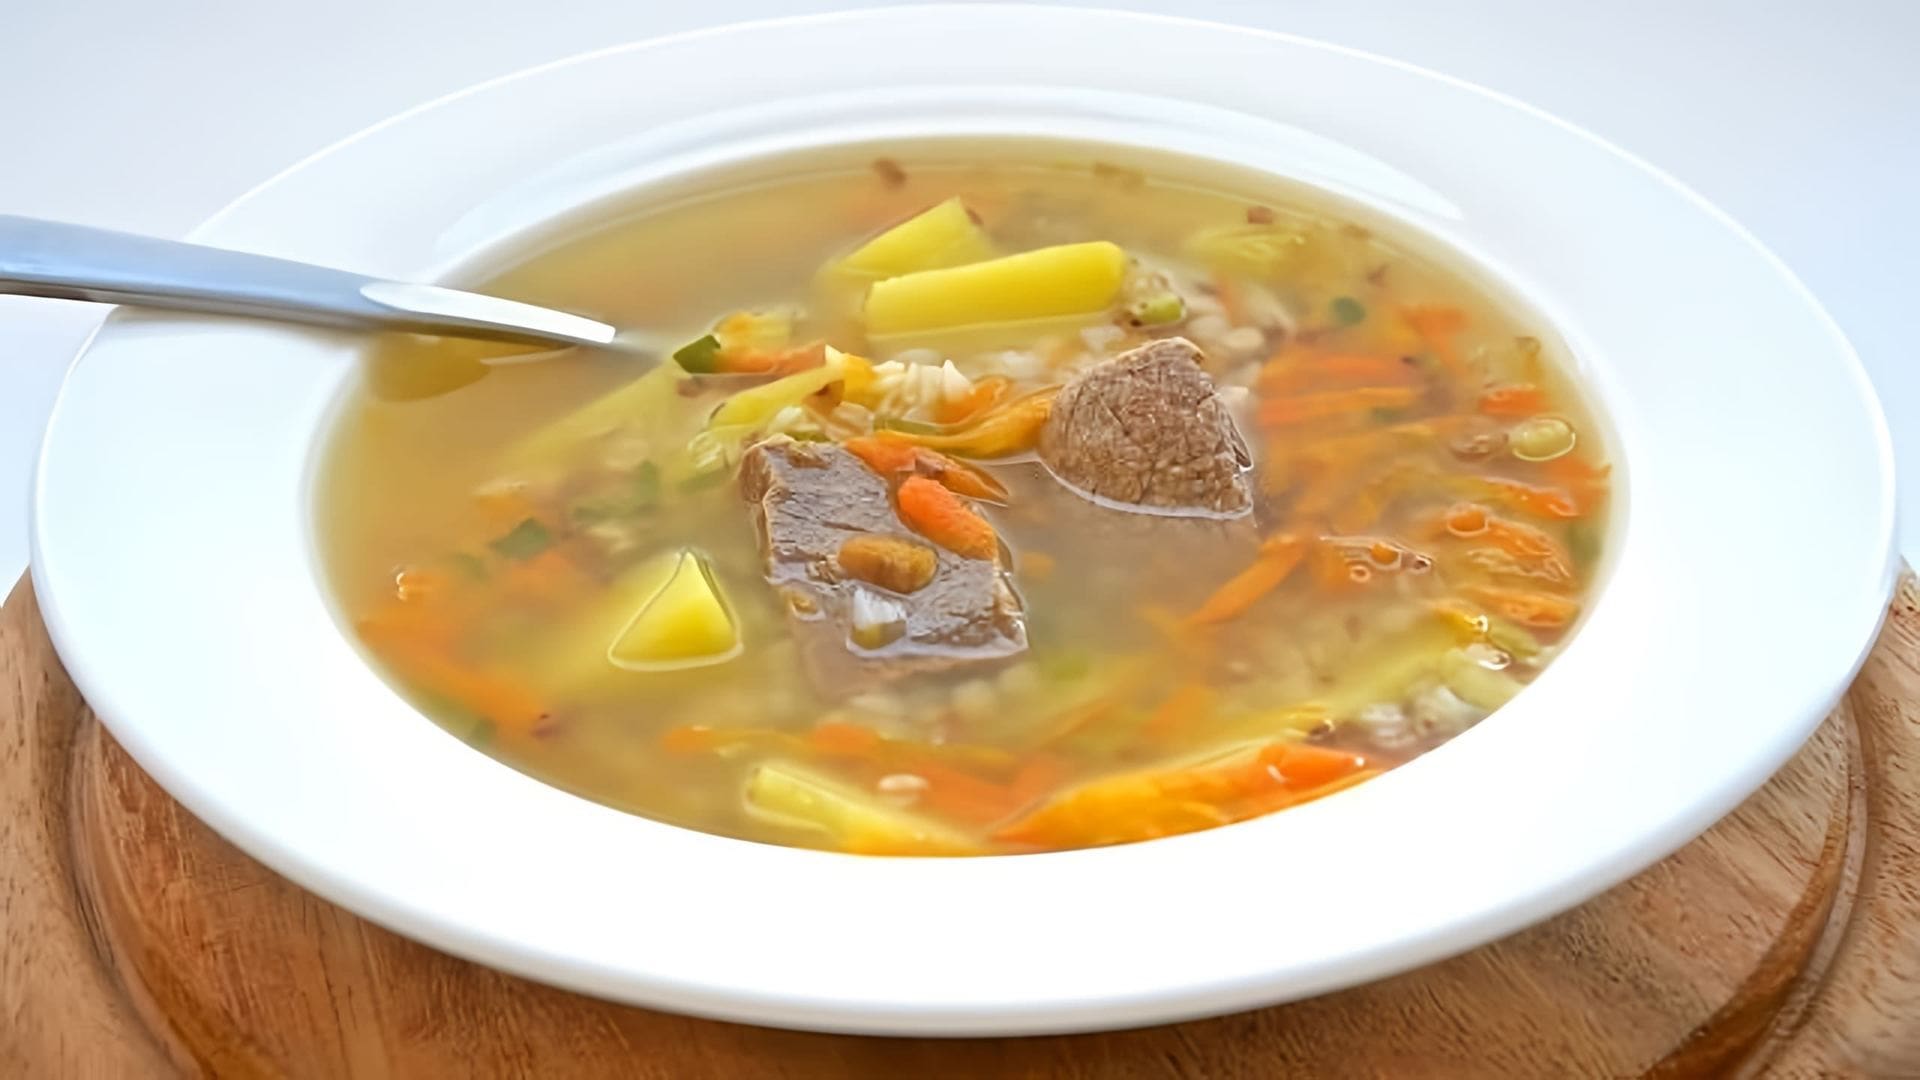 В этом видео демонстрируется процесс приготовления супа с мясом и вермишелью